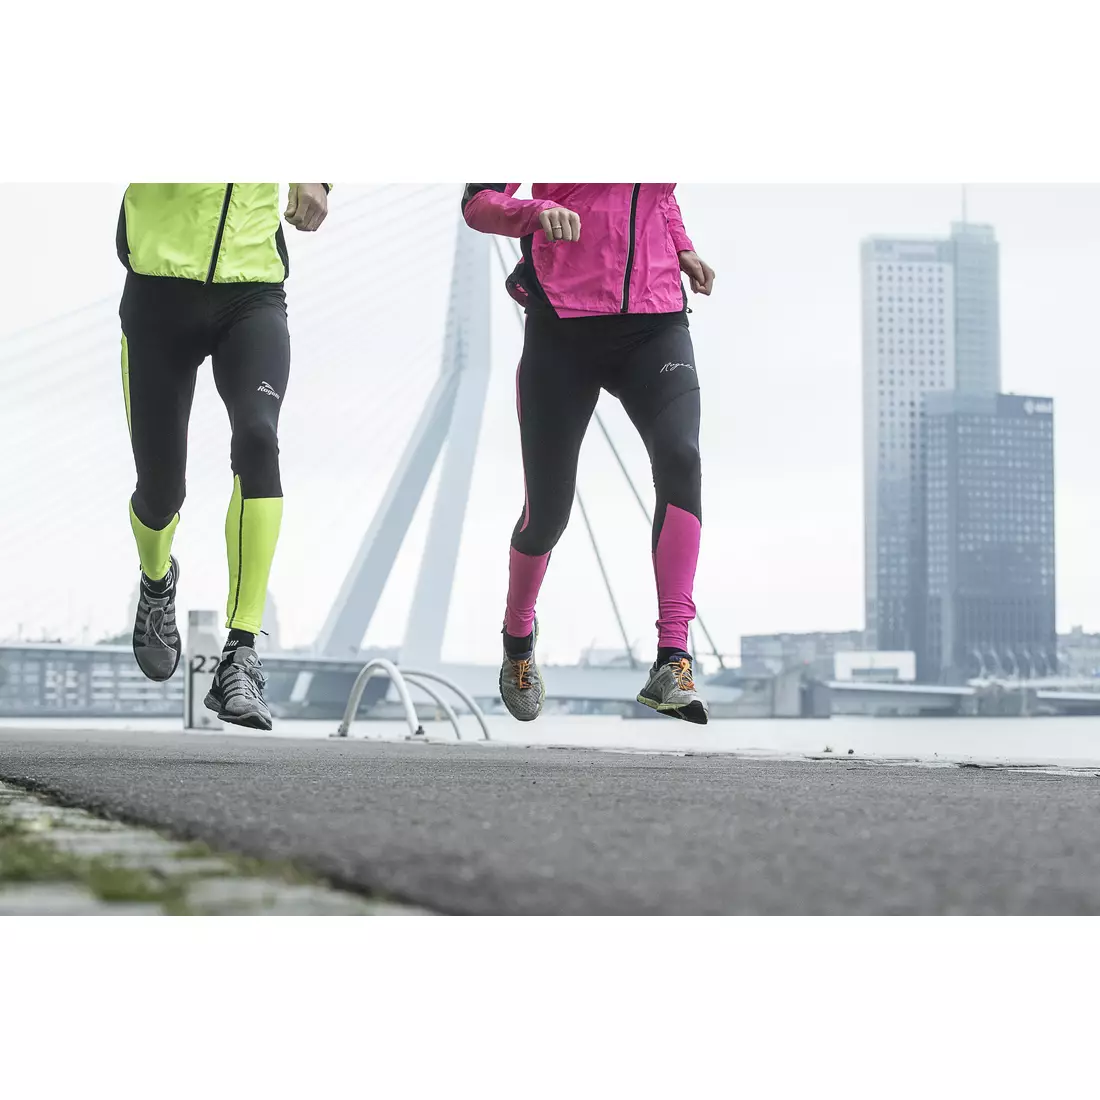 Hanorac pentru alergare bărbați ROGELLI RUN GRAFTON 830.635, culoare: fluor